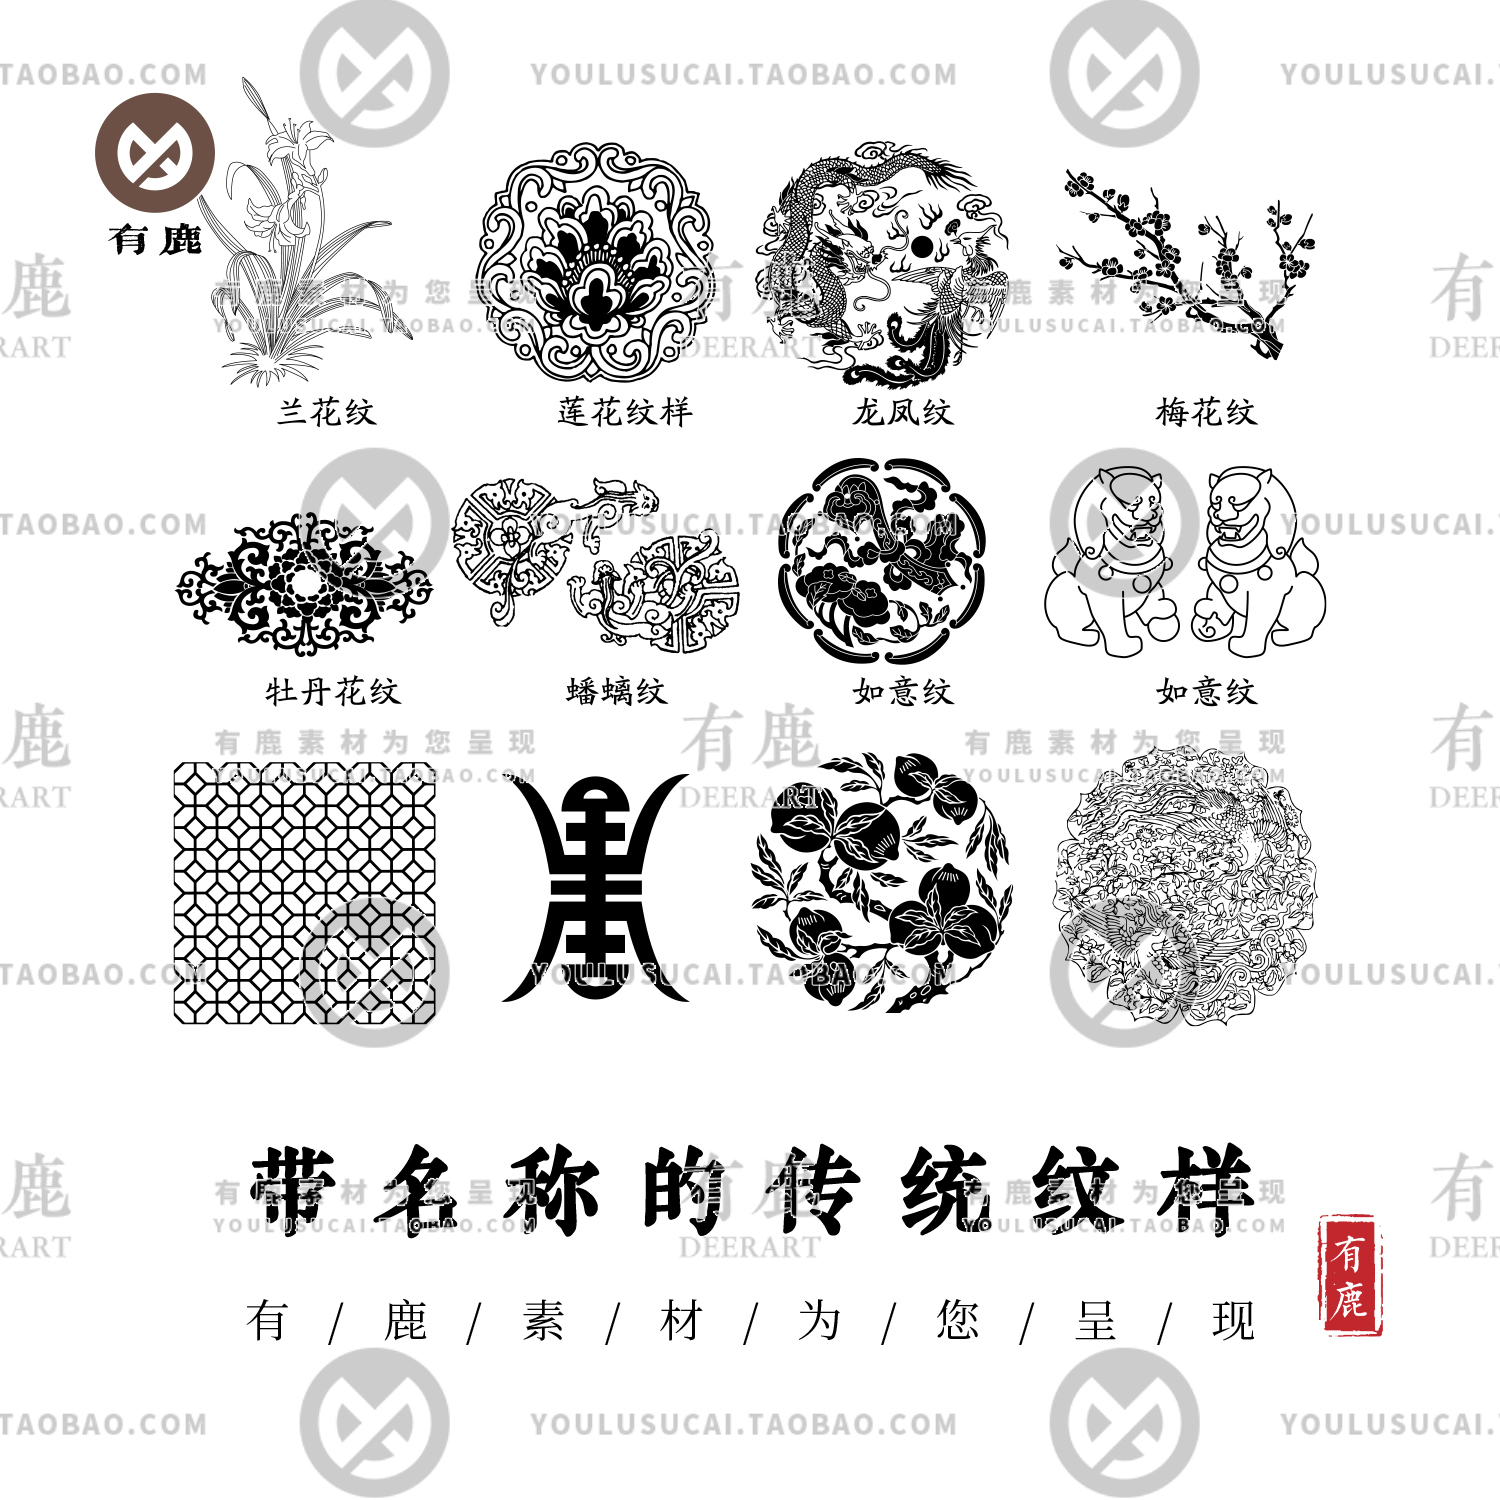 中国纹样集锦传统青铜器植物鱼龙凤花草线稿带名称图案AI矢量素材